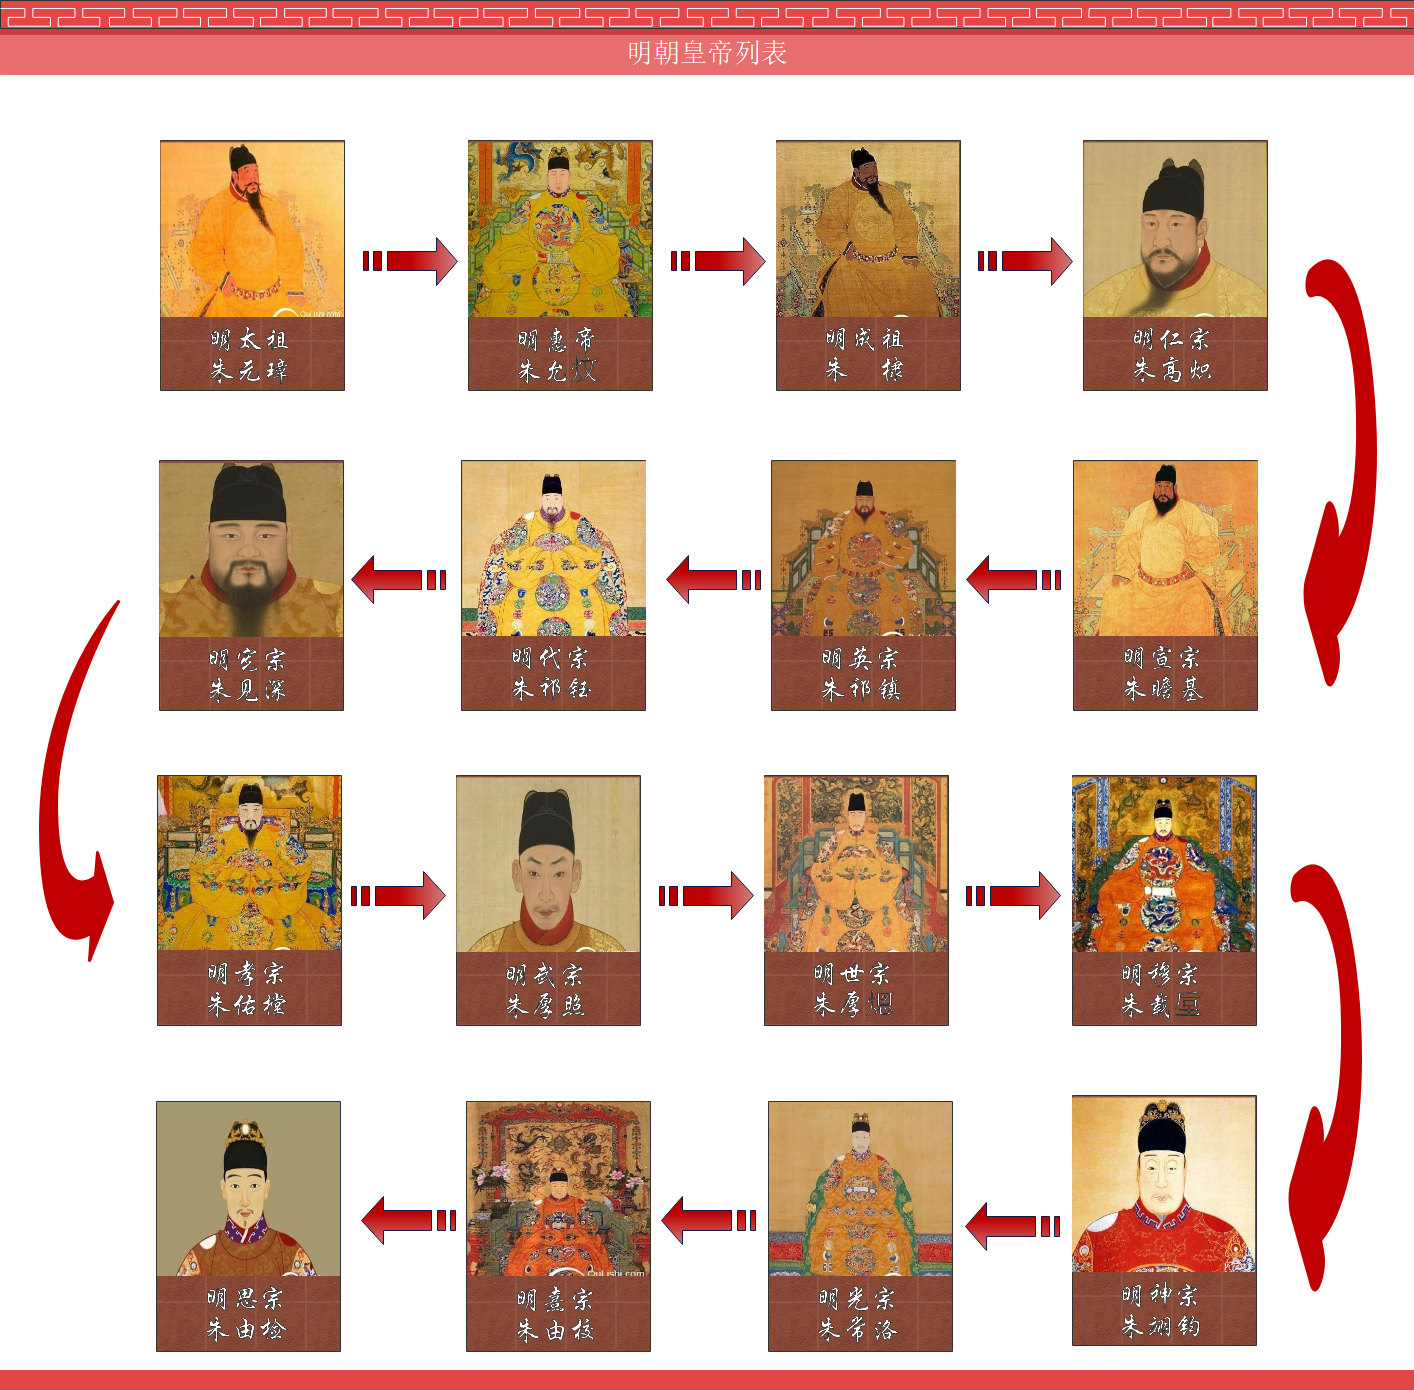 明代皇帝顺序及年号表图片